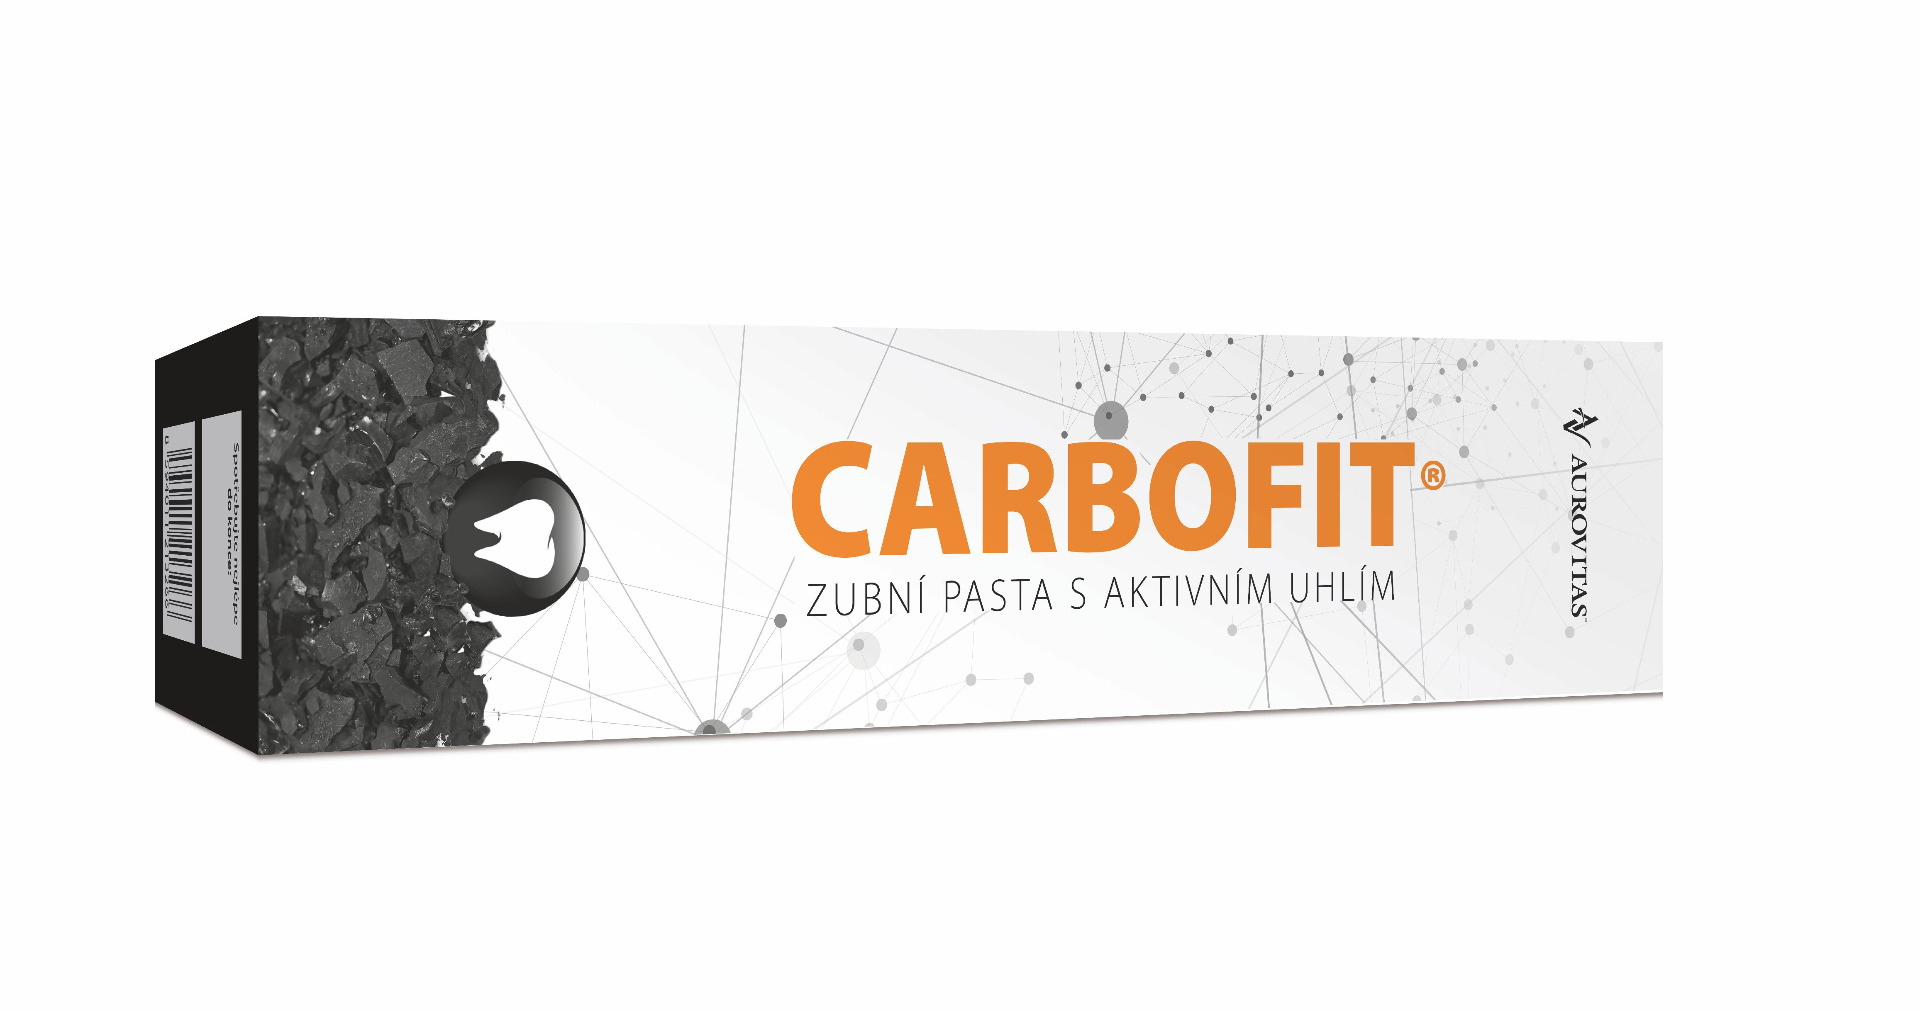 Carbofit Zubní pasta s aktivním uhlím 100 g Carbofit